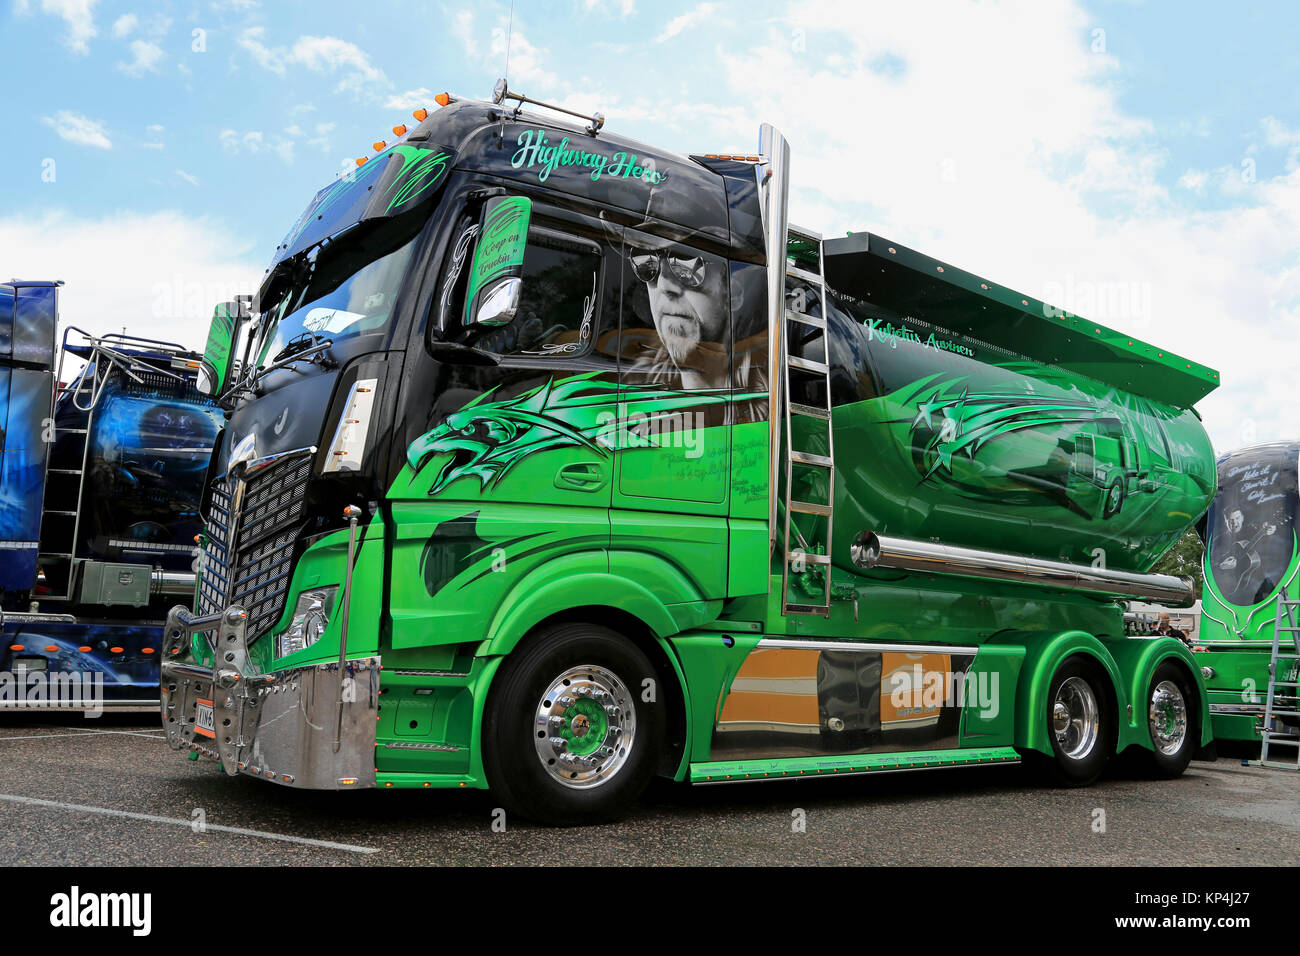 PORVOO, FINLAND - JUNE 27, 2015: Mercedes-Benz Actros Highway Hero of Kuljetus Auvinen at Riverside Truck Meeting 2015. Stock Photo